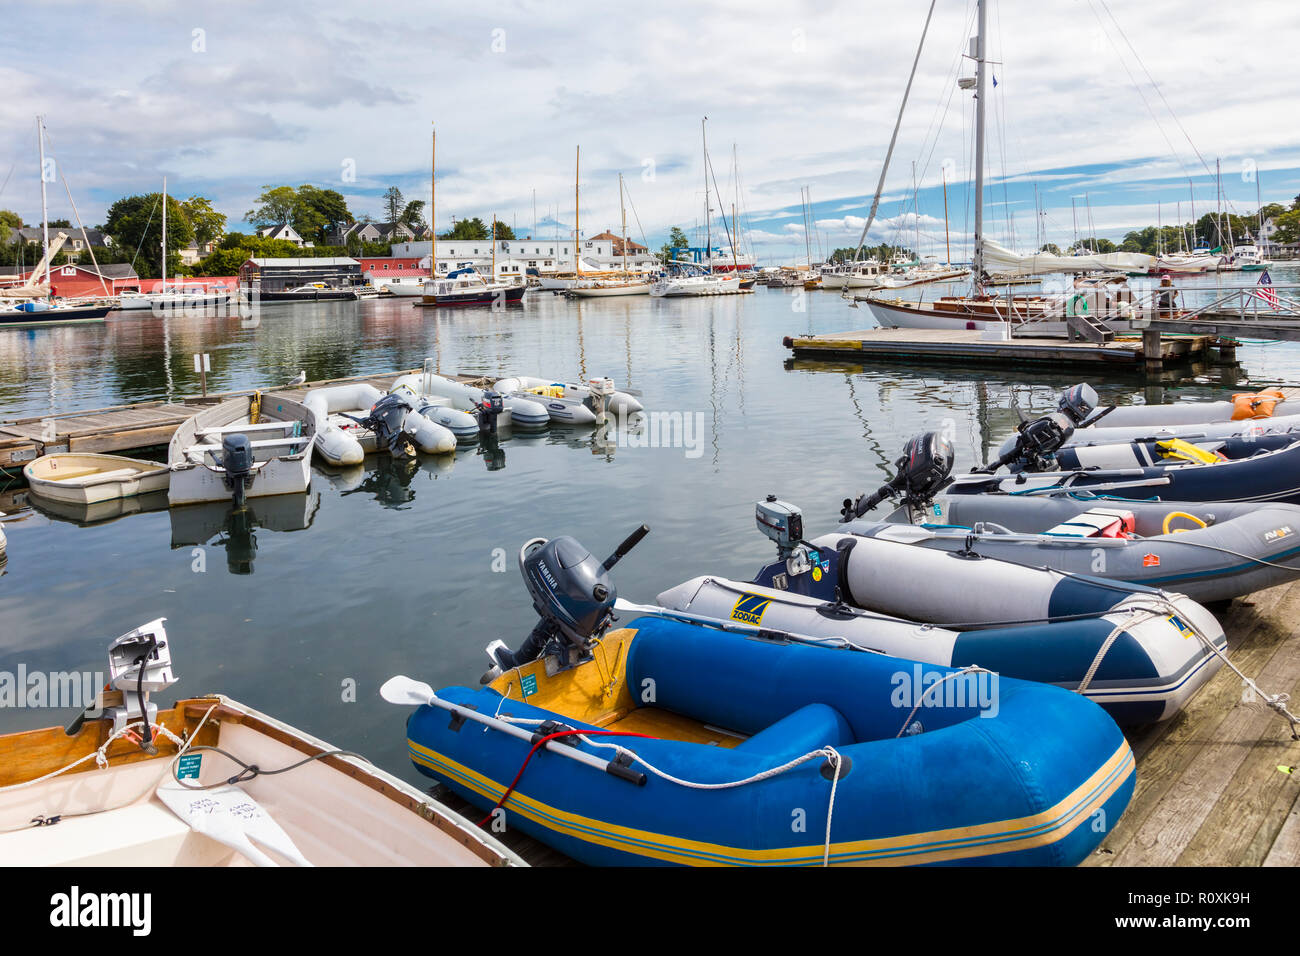 Hafen in der touristischen Stadt von Camden am Atlantik Küste von Maine, USA Stockfoto